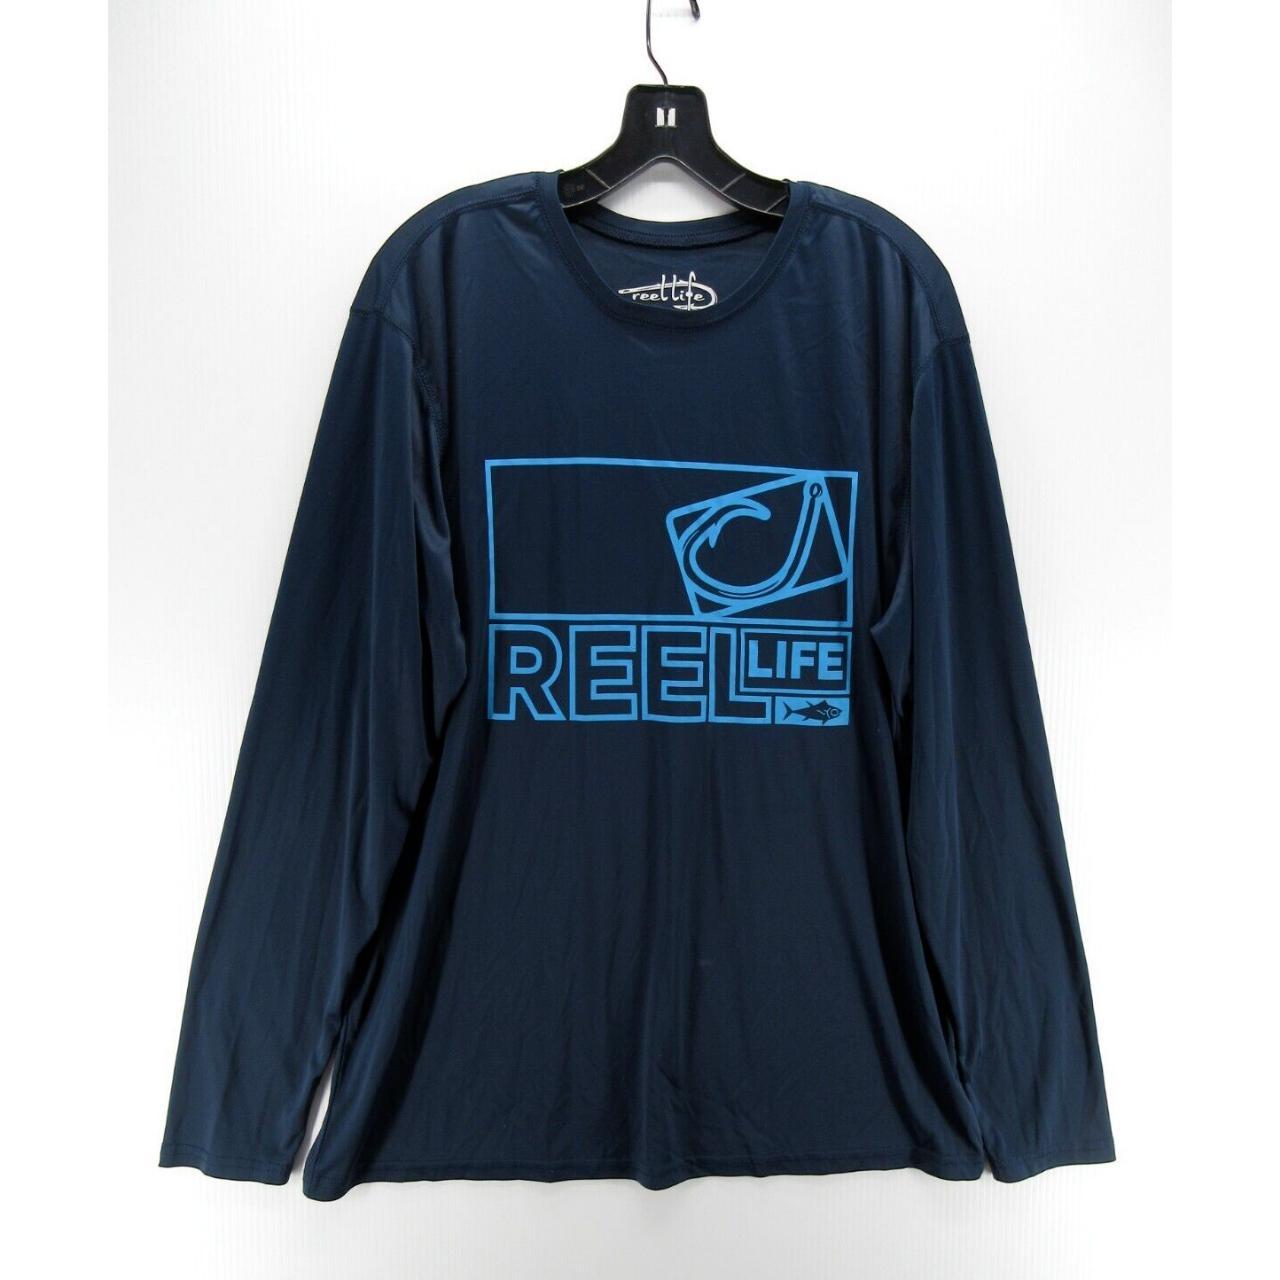 Reel Life Shirt Men XXL Blue Pullover Surfer Fishing - Depop